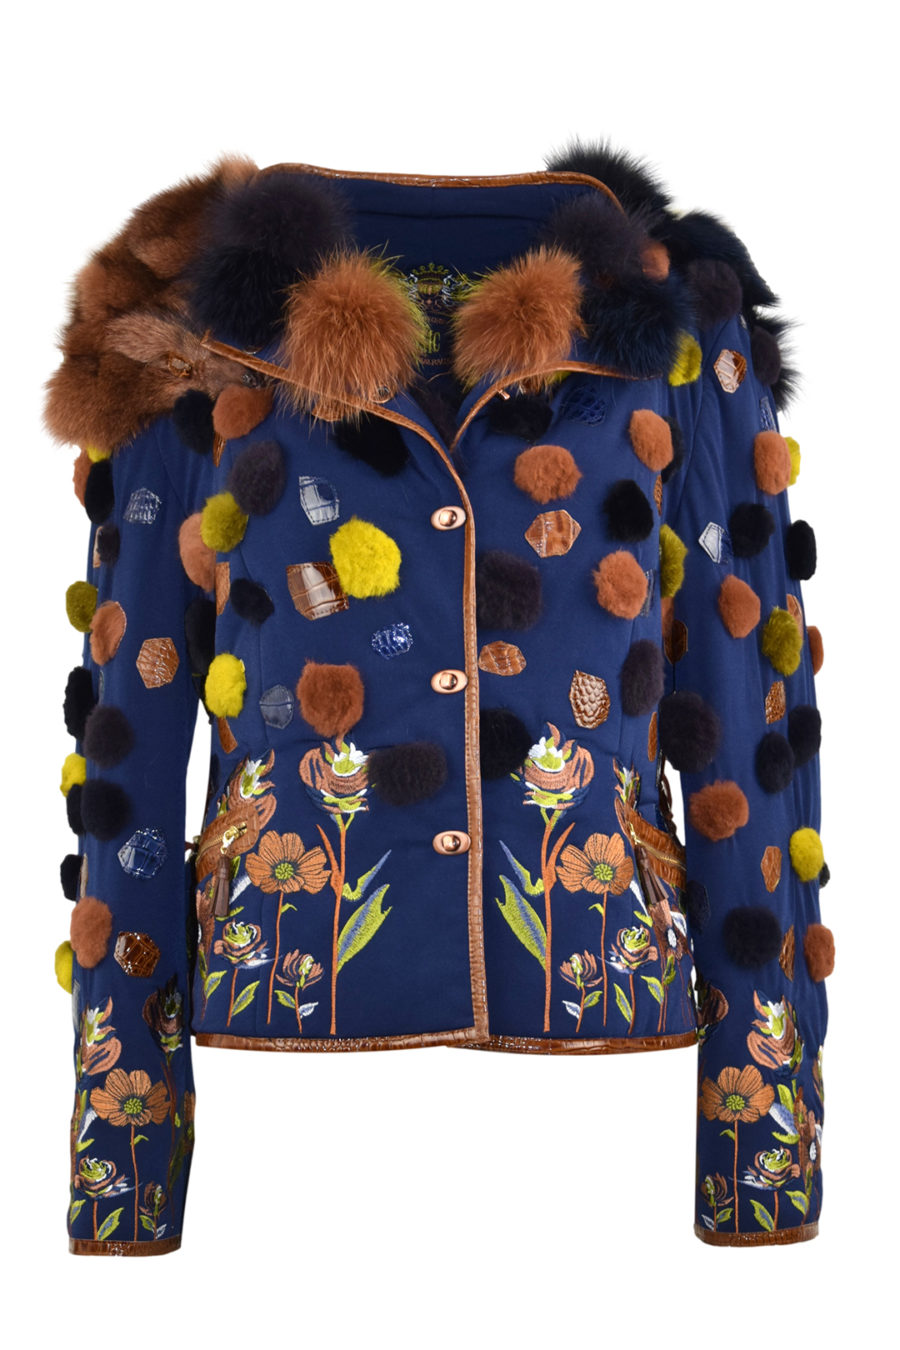 Pelzjacke mit "autumn meadow " embroidery Applikationen aus geschorenem Fuchs und Leder in Kroko-Optik, RV-Taschen, wattiert